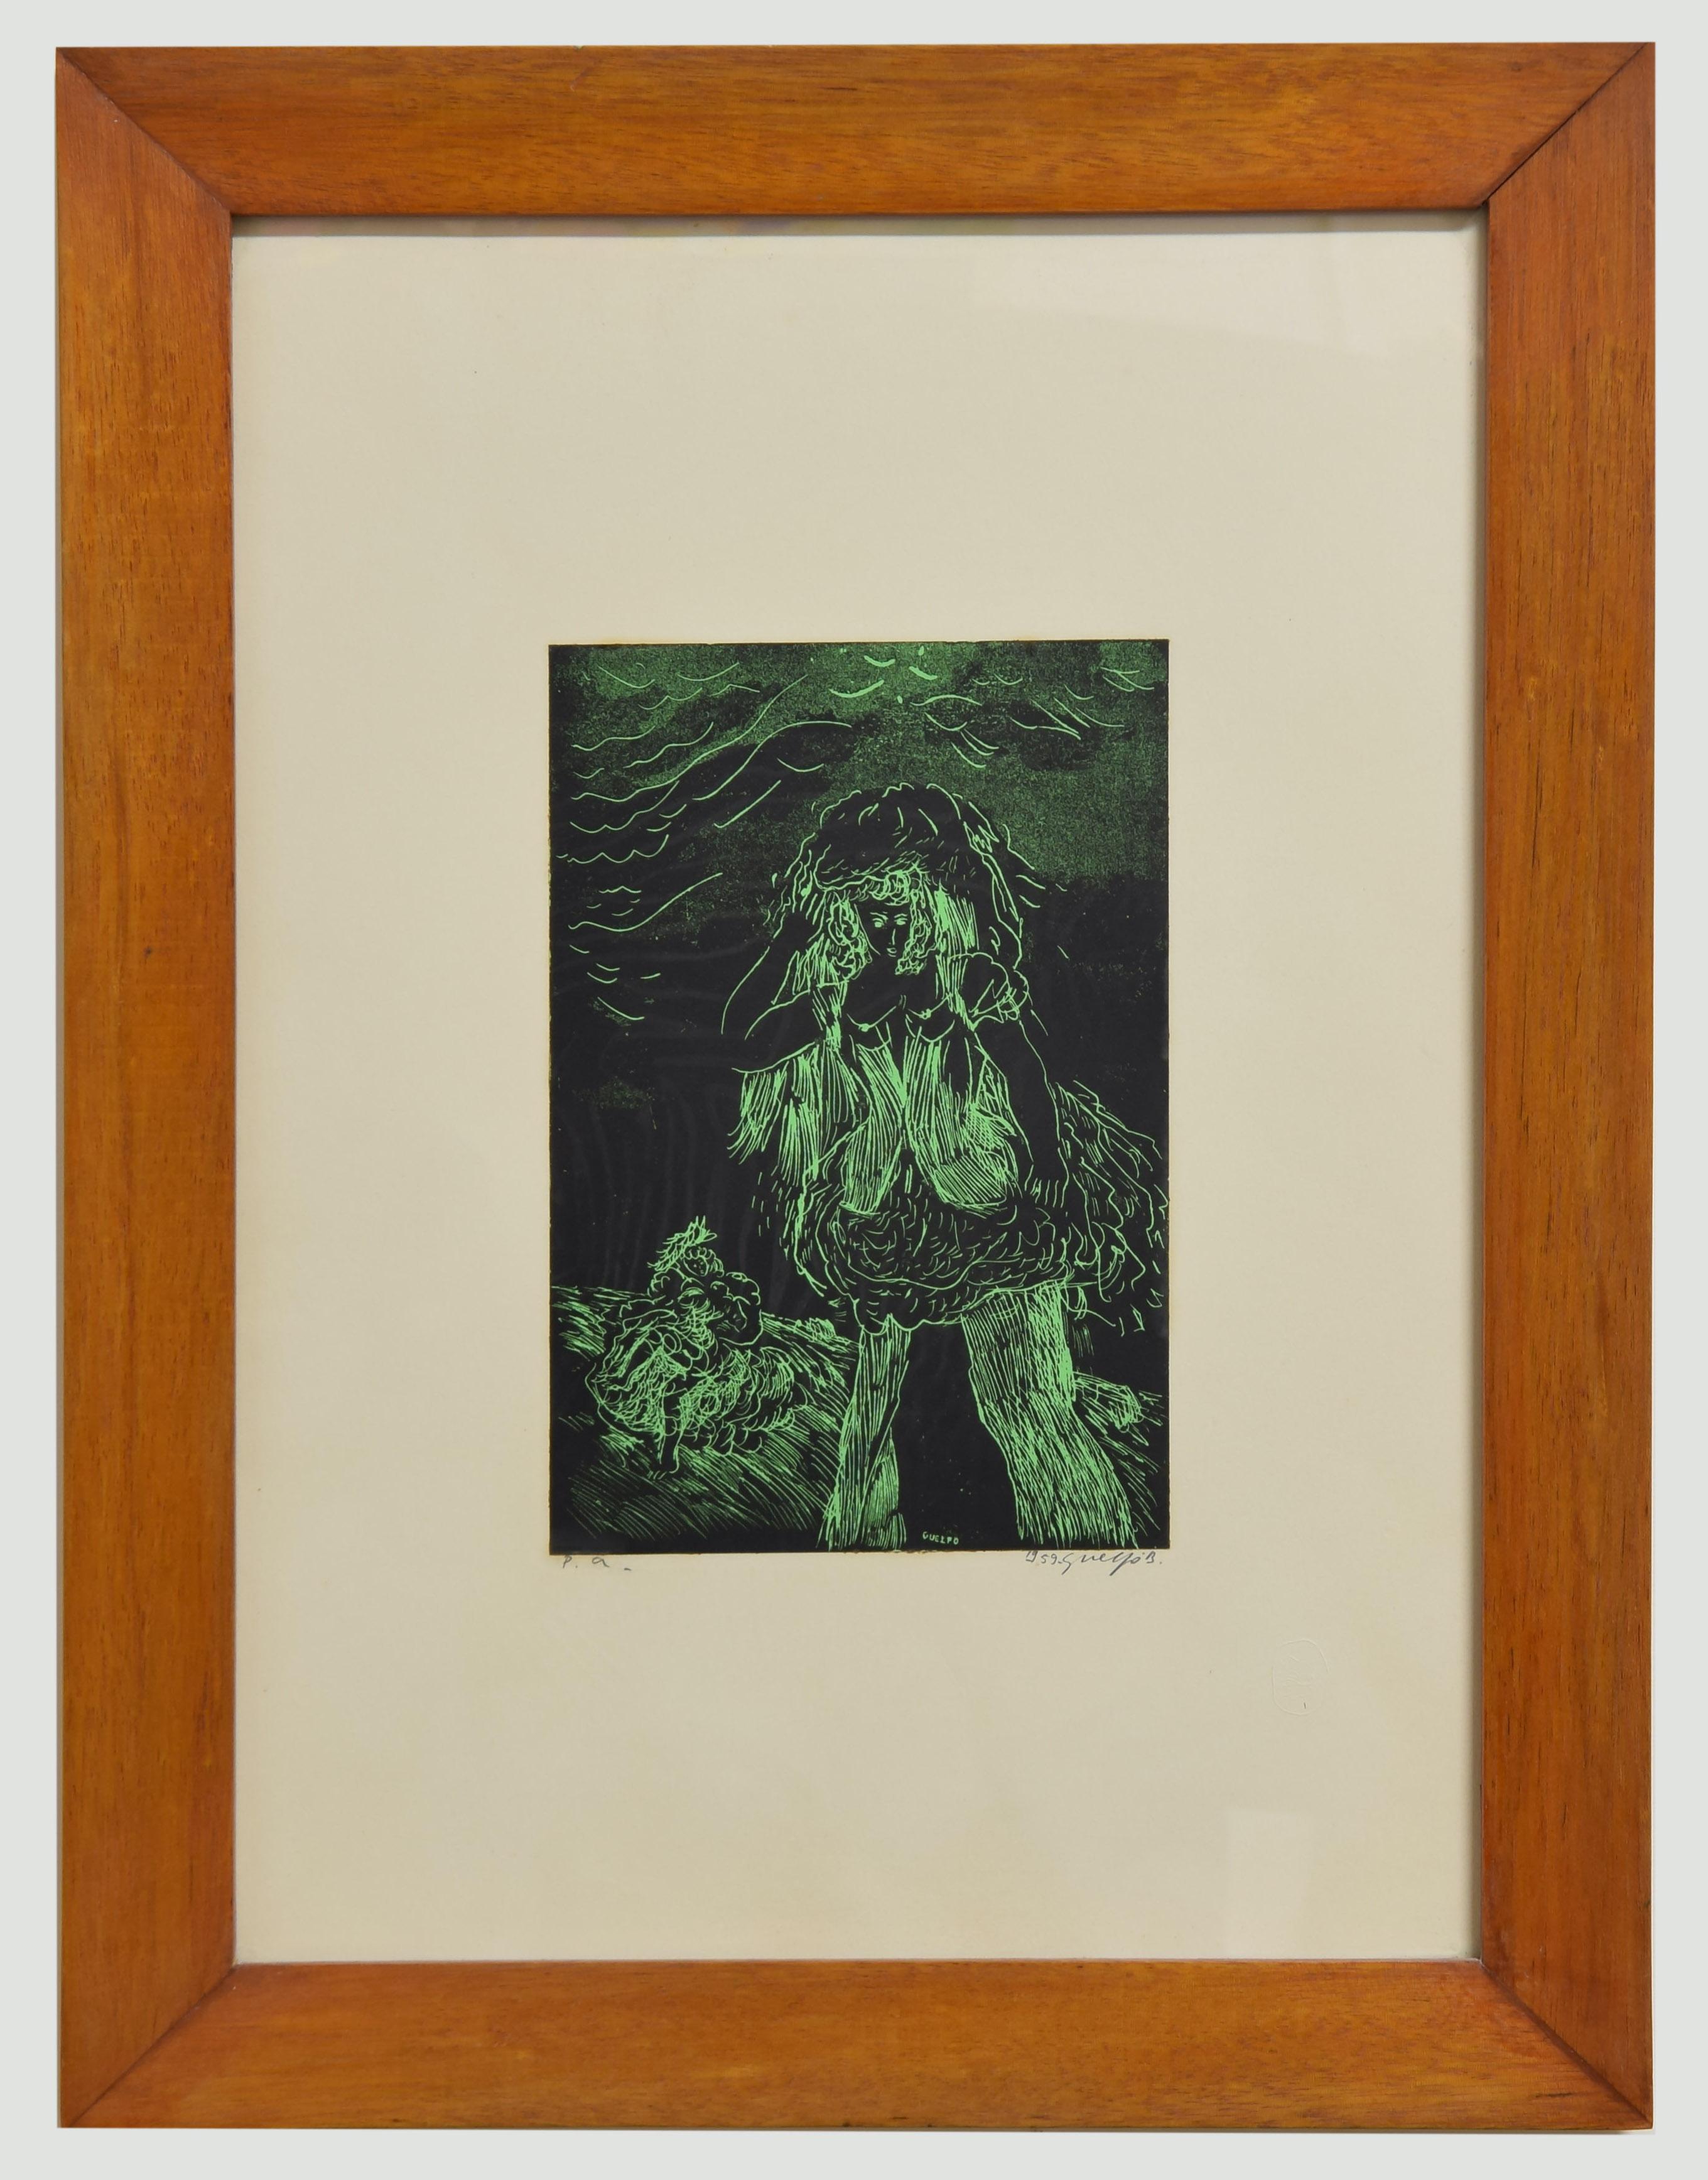 Green Woman - Woodcut by Guelfo - 1959 - Print by Guelfo Bianchini